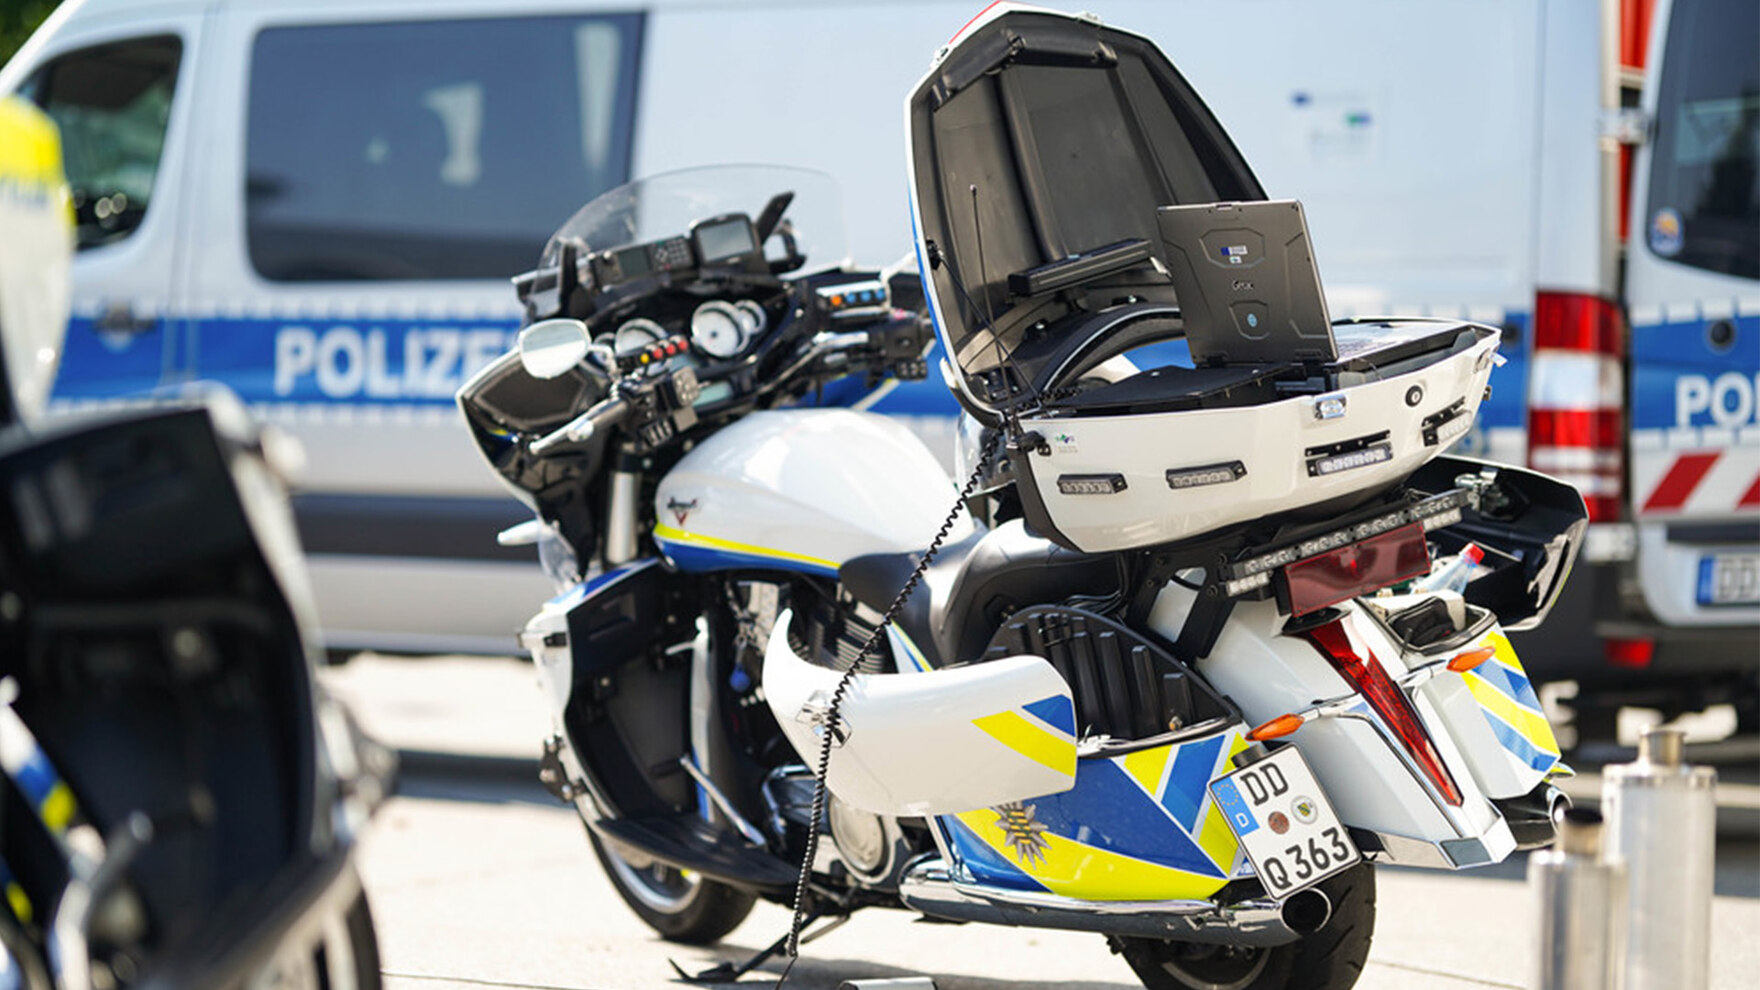 Ein Polizeimotorrad steht auf einem Parkplatz. Die Transportbox ist offen. Ein Laptop steht darin. Im Hintergrund ist ein größerer Polizeiwagen zu erkennen.